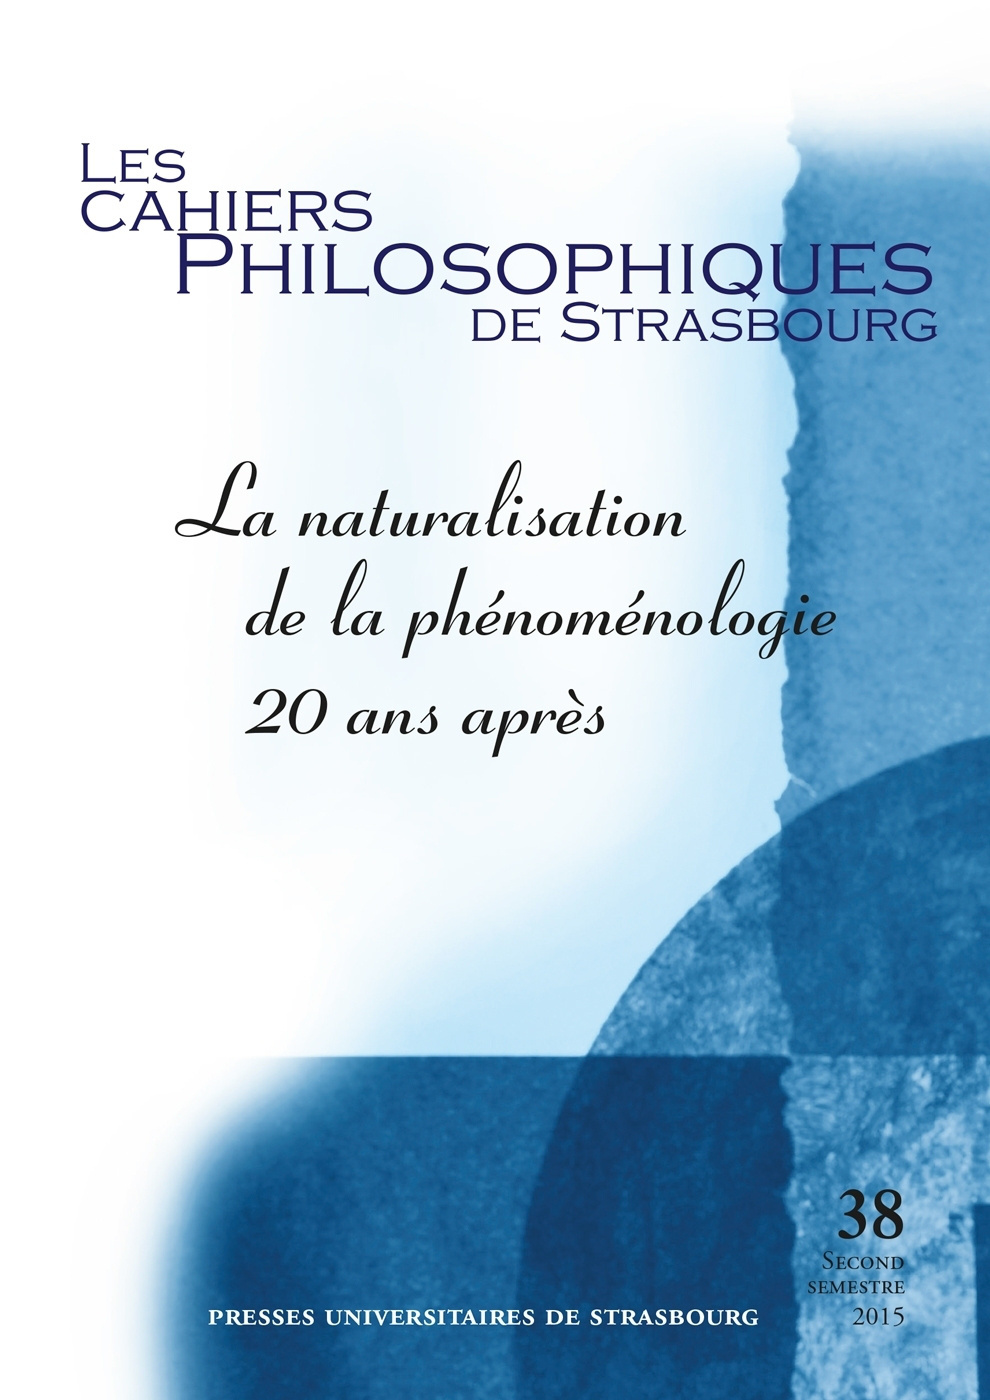 Les Cahiers philosophiques de Strasbourg n°38/2015